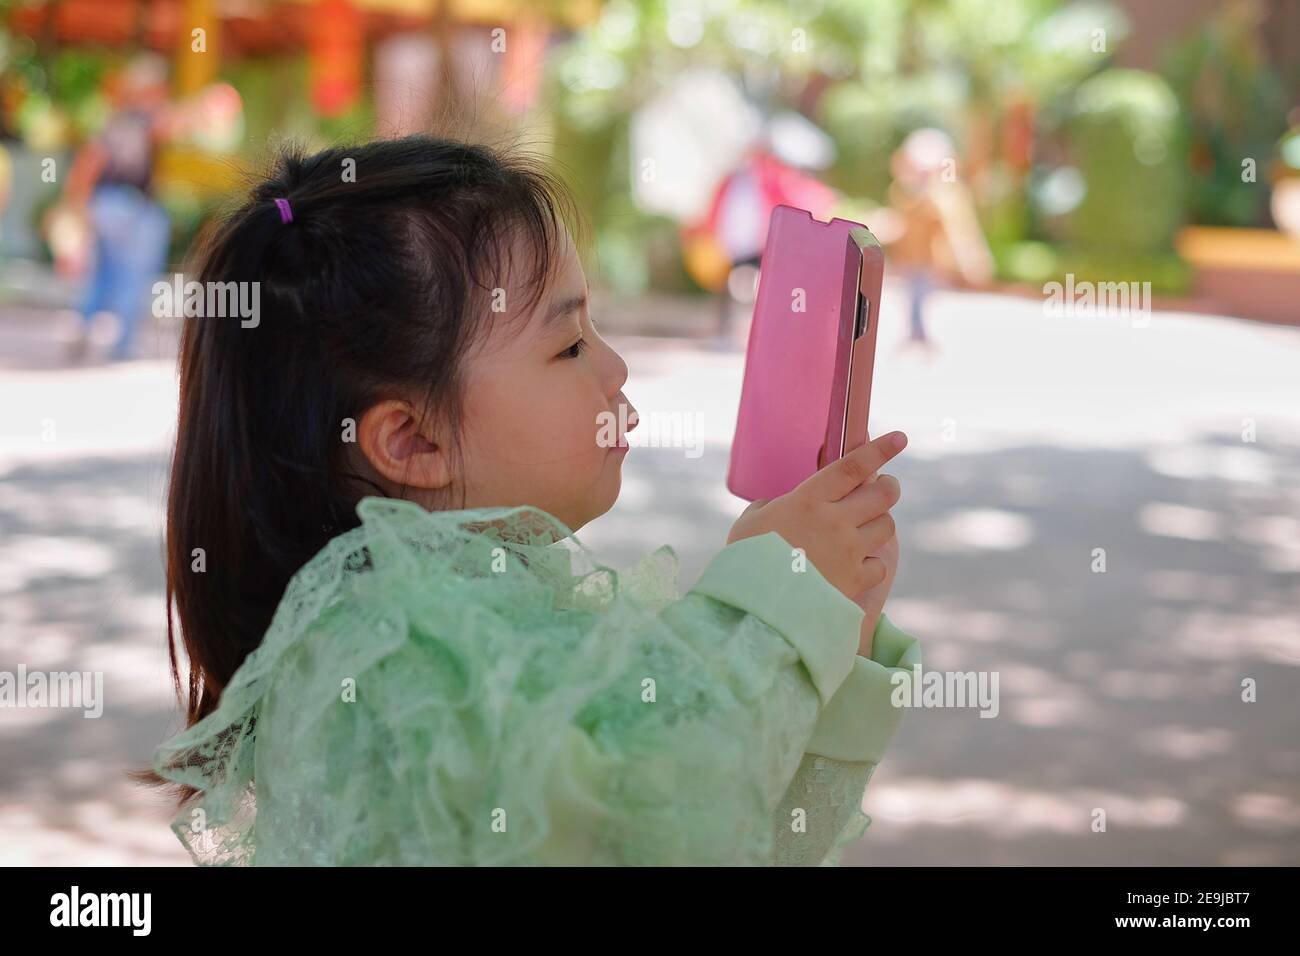 Ein nettes junges asiatisches Mädchen hält ein rosa Smartphone und versucht, ein Bild in ihrem Urlaub zu machen. Stockfoto